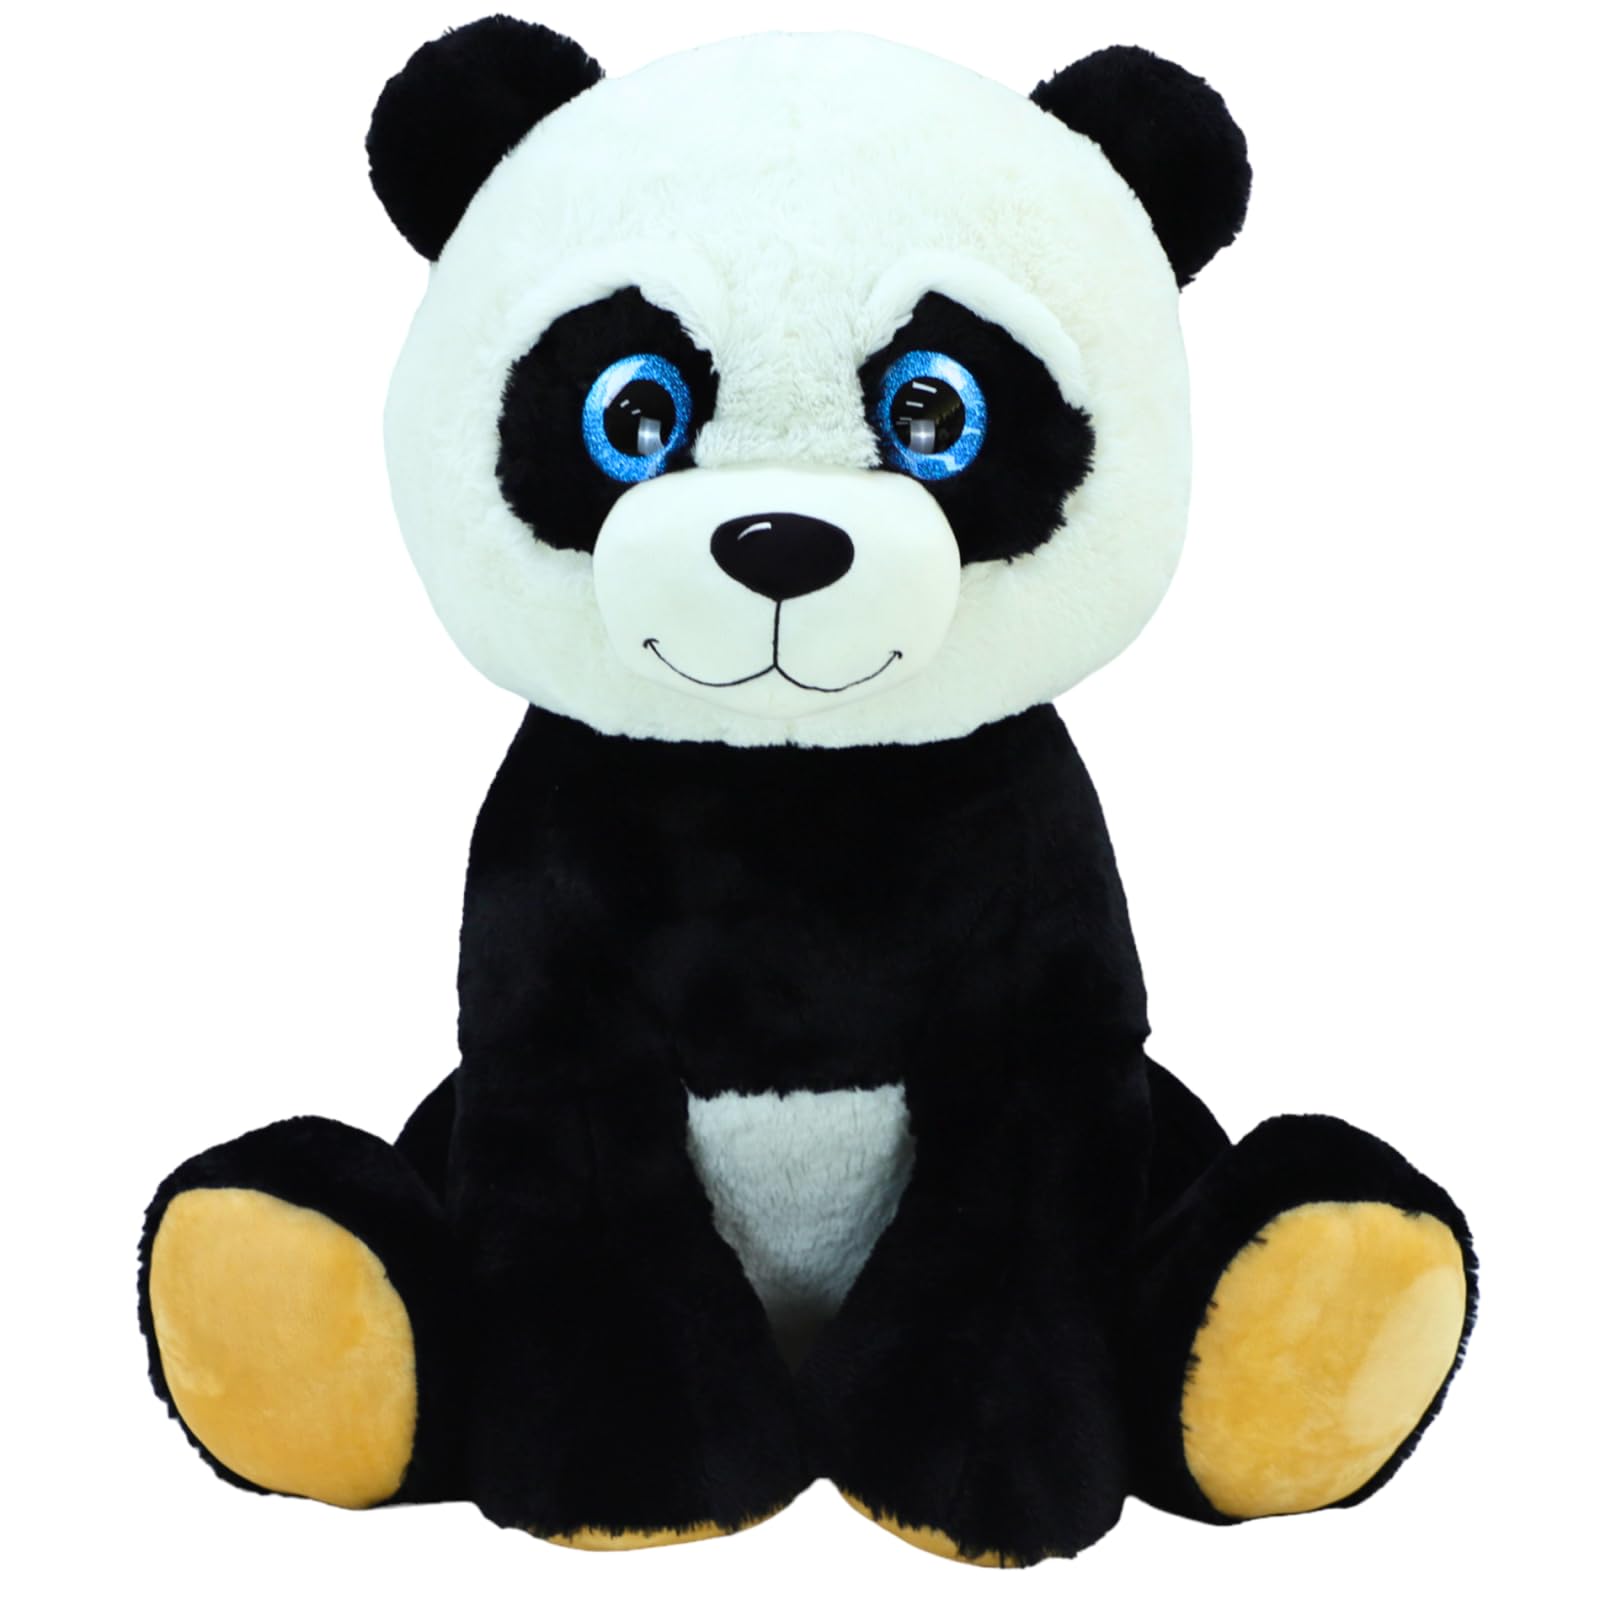 TE-Trend XXL Pandabär, 50cm – Das perfekte Kuscheltier für alle Lebenslagen, ob als Freund, Geschenk oder zum Kuscheln. Mit seinen blauen Glitzeraugen und dem weichen Fell Macht er jeden glücklich